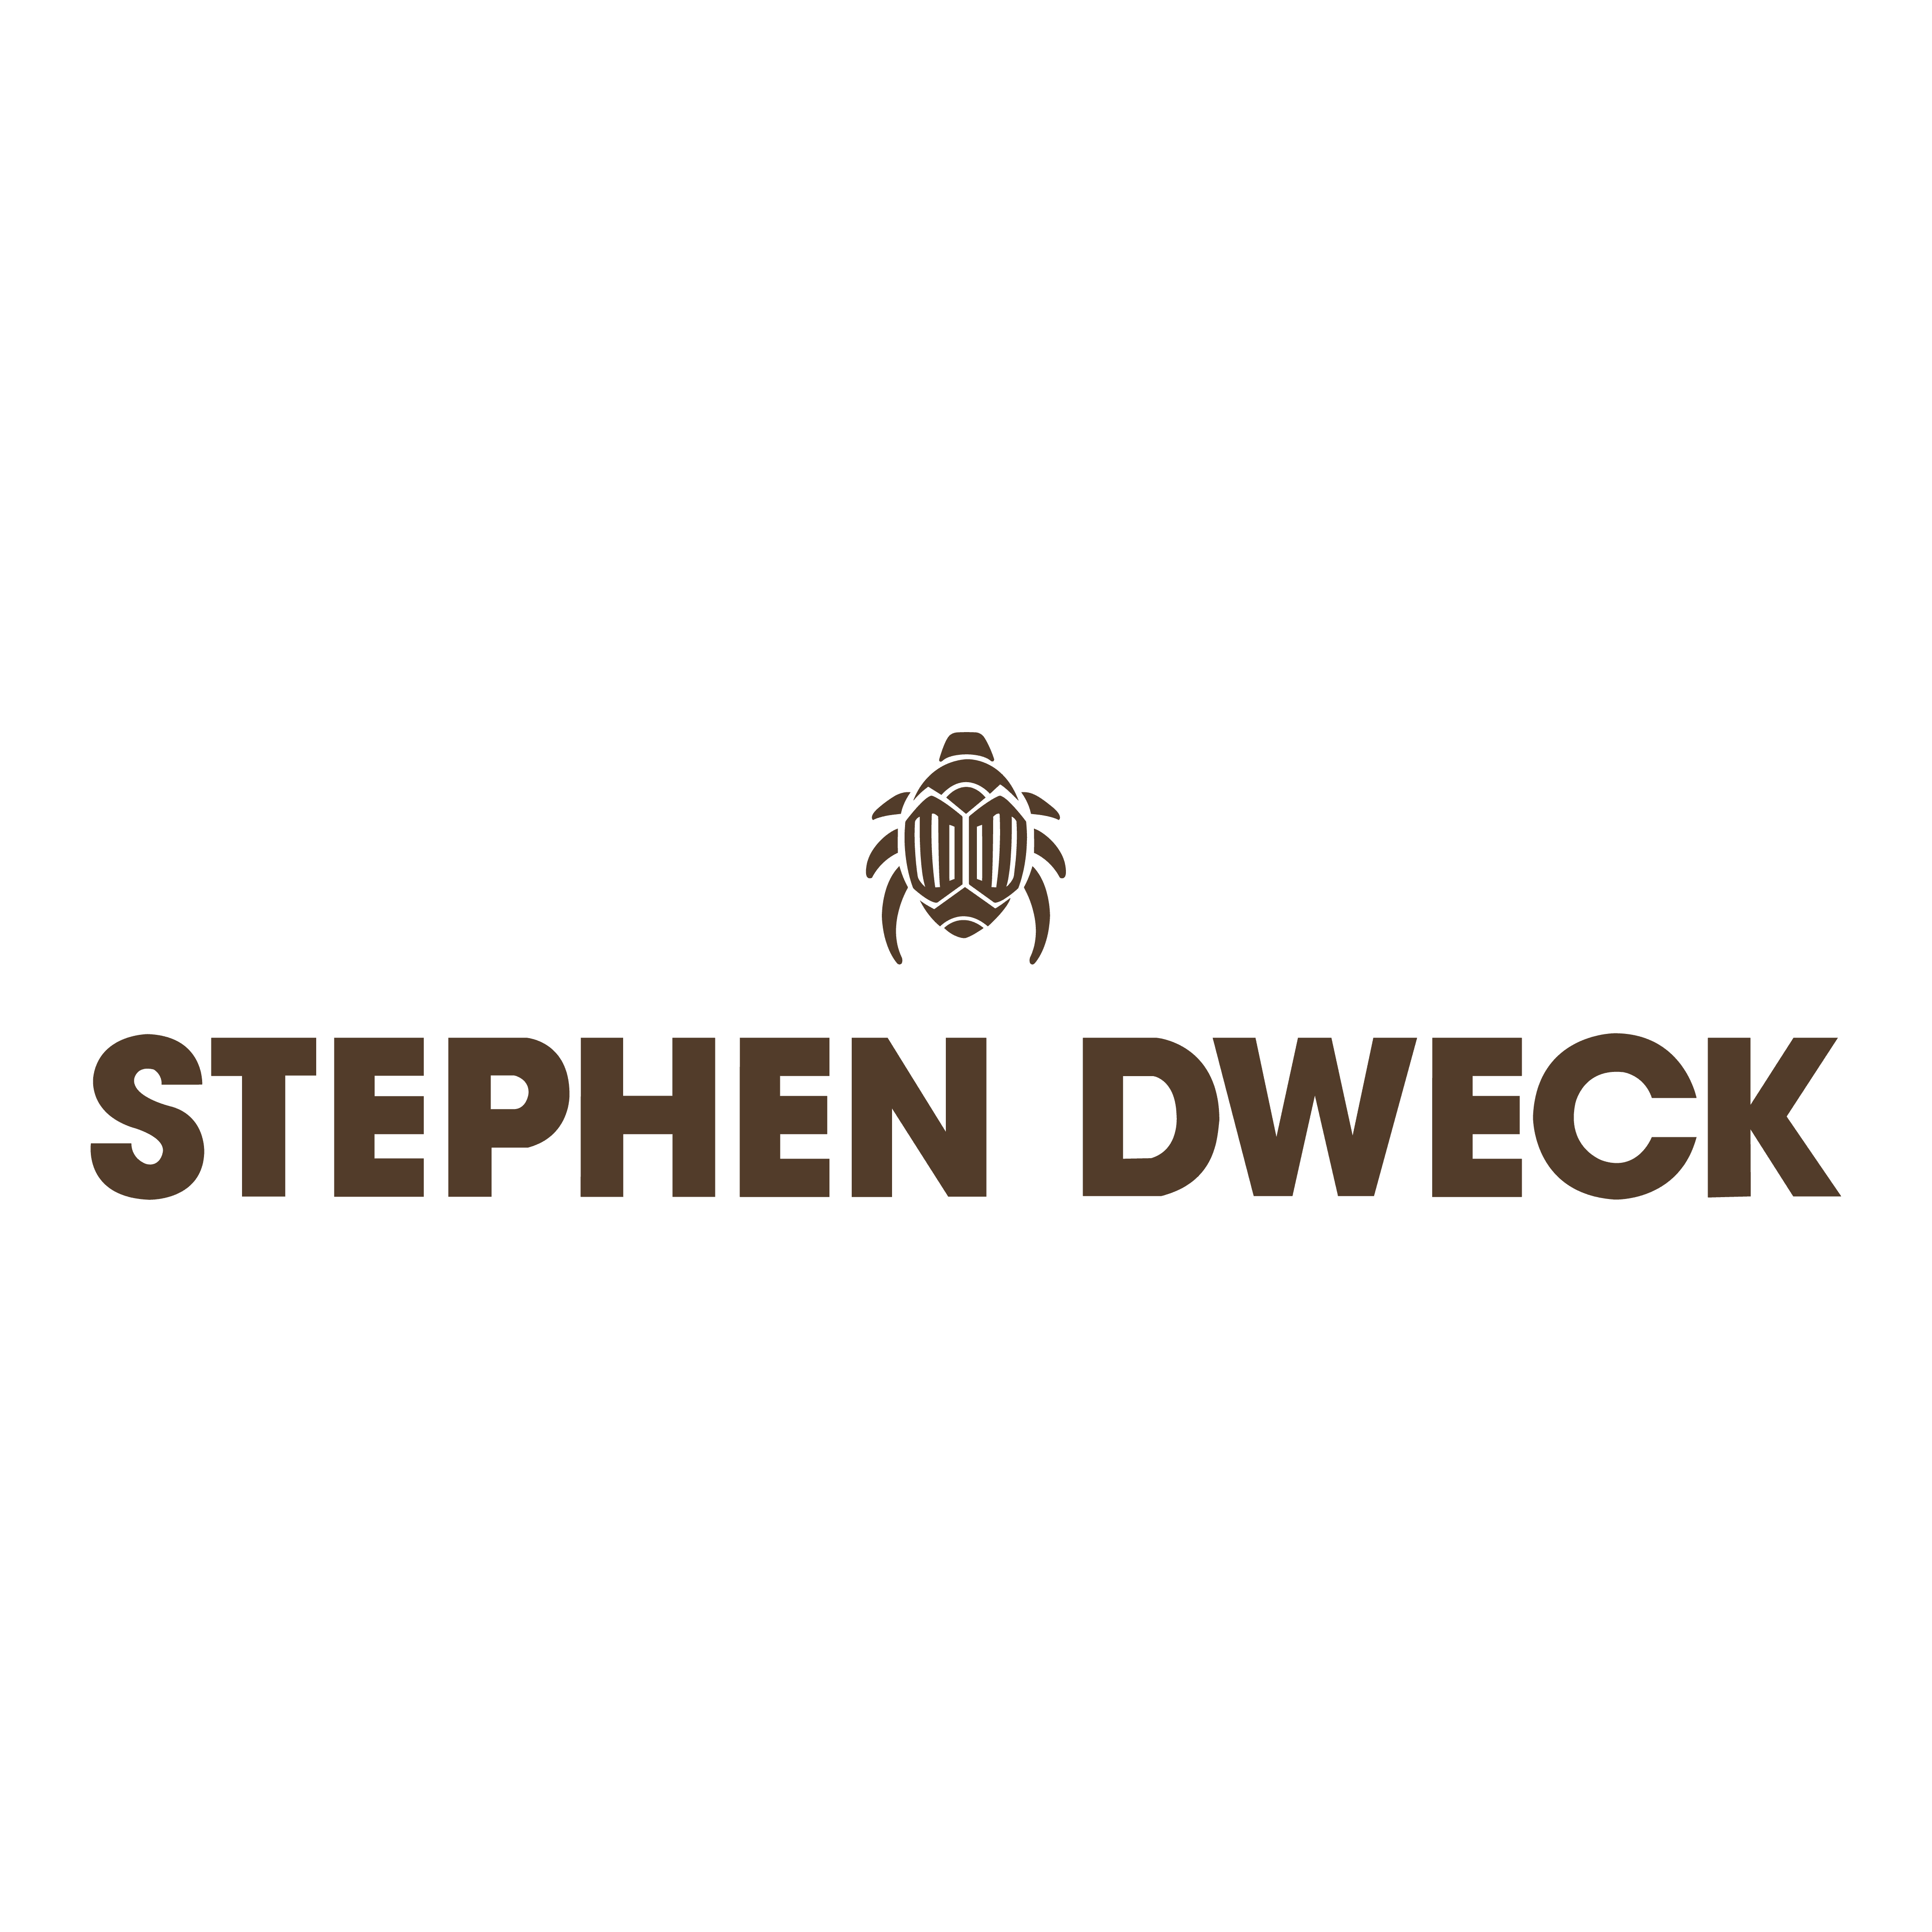 Stephen Dweck logo